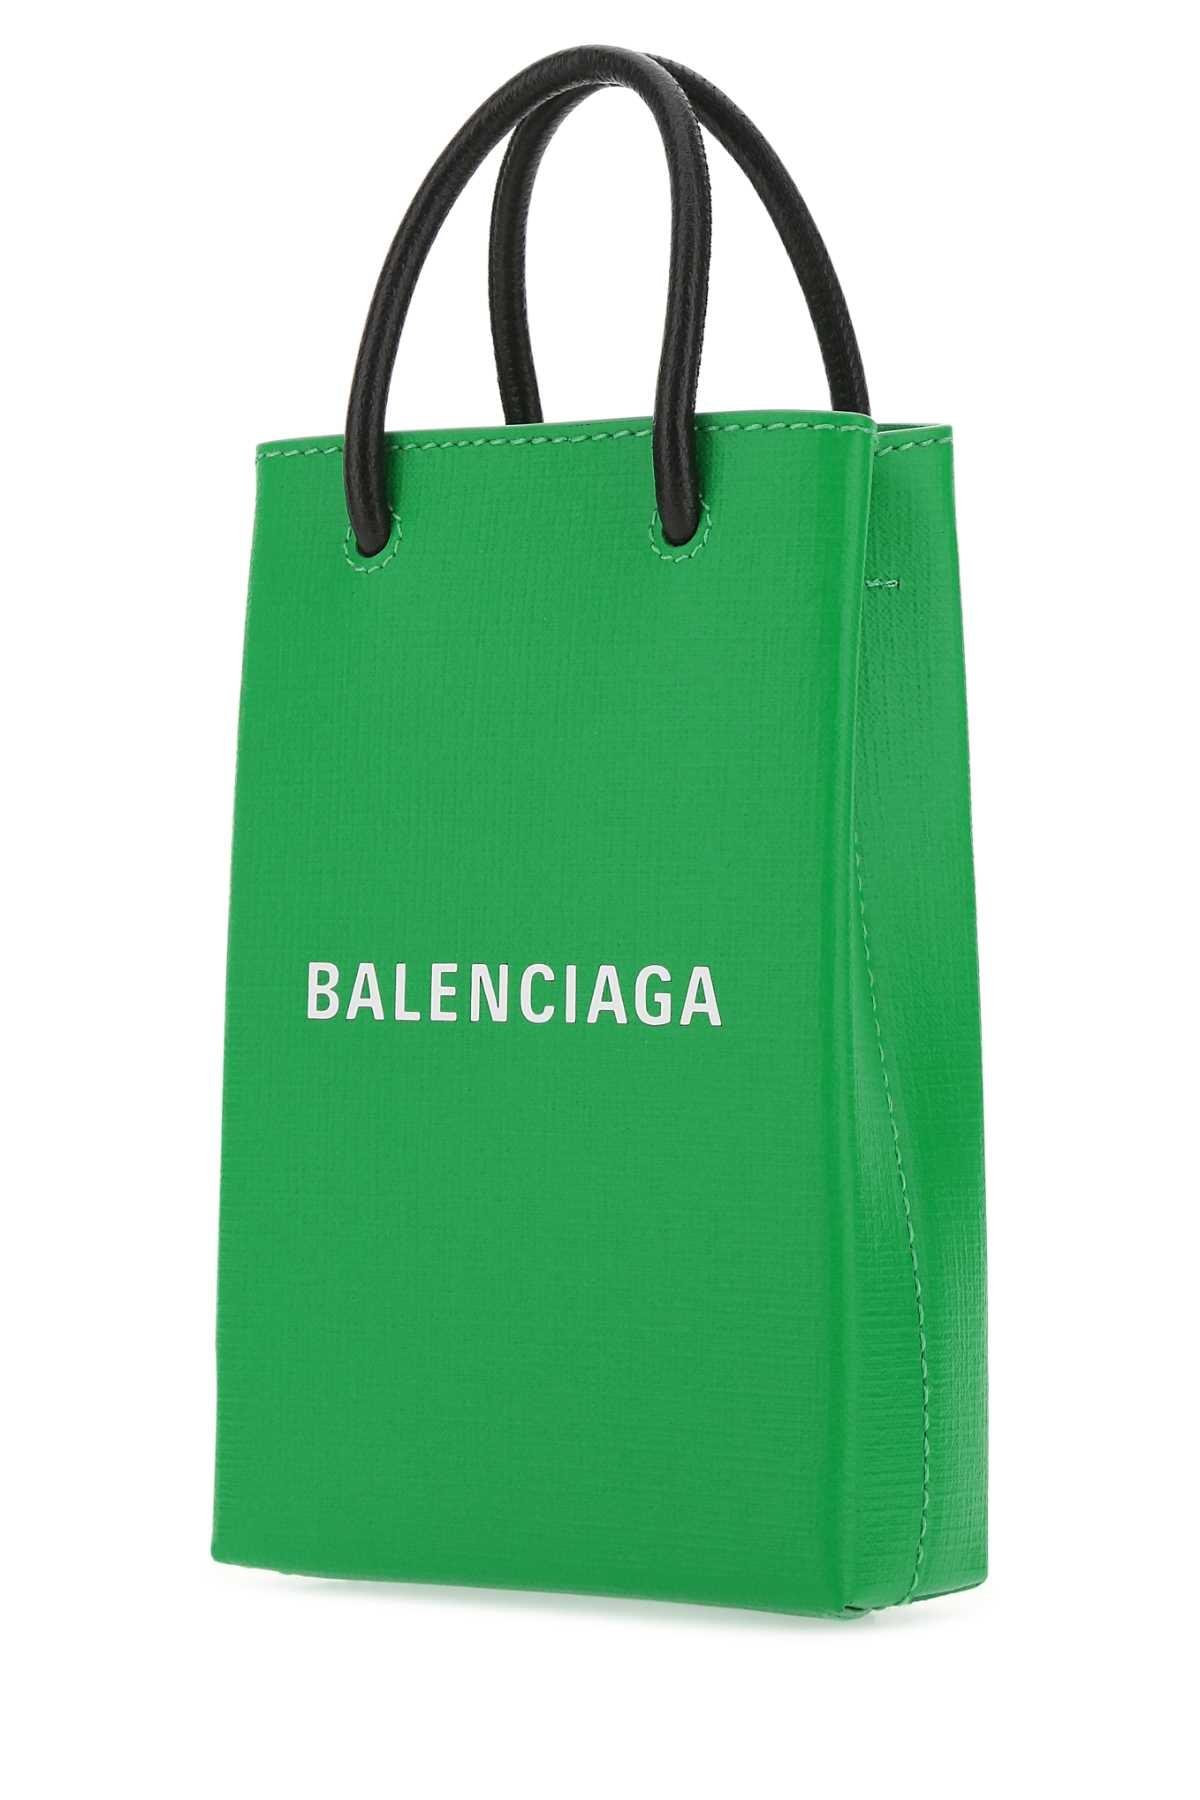 Balenciaga Shopping Phone holder bag